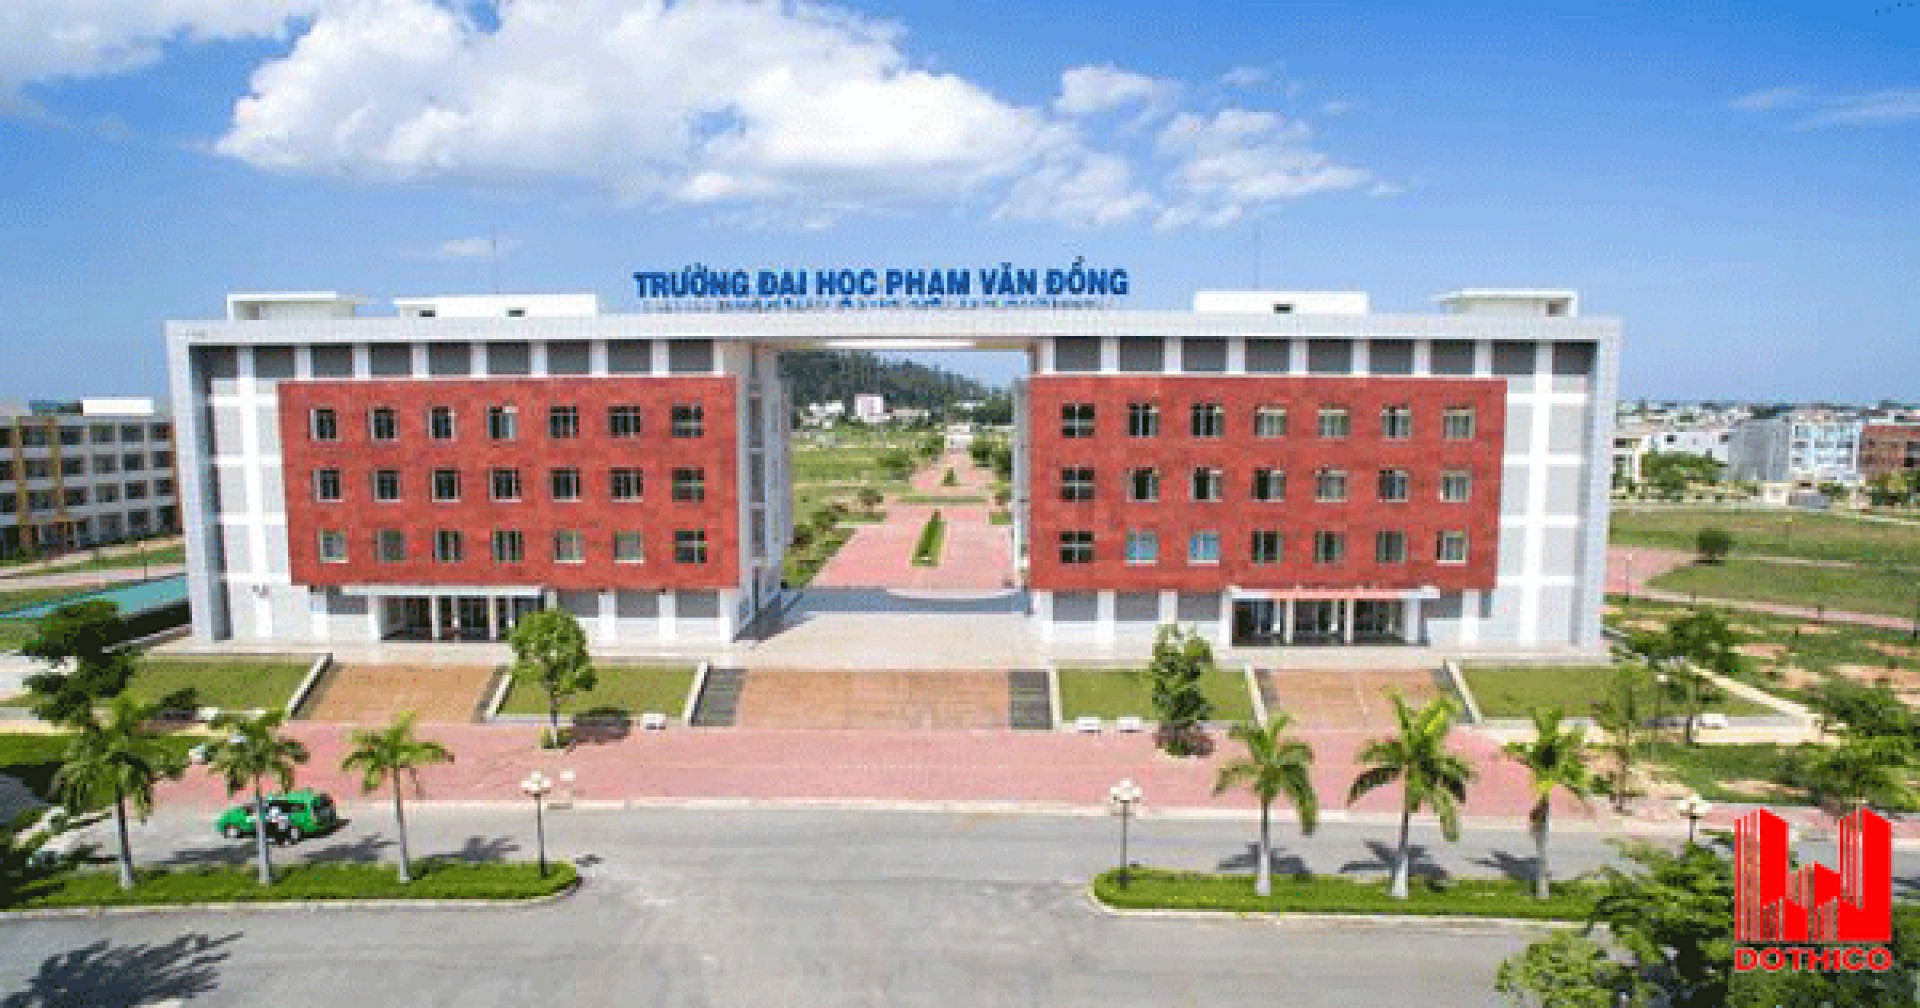 Trường Đại học Phạm Văn Đồng bật mí thông tin tuyển sinh mới nhất năm 2019